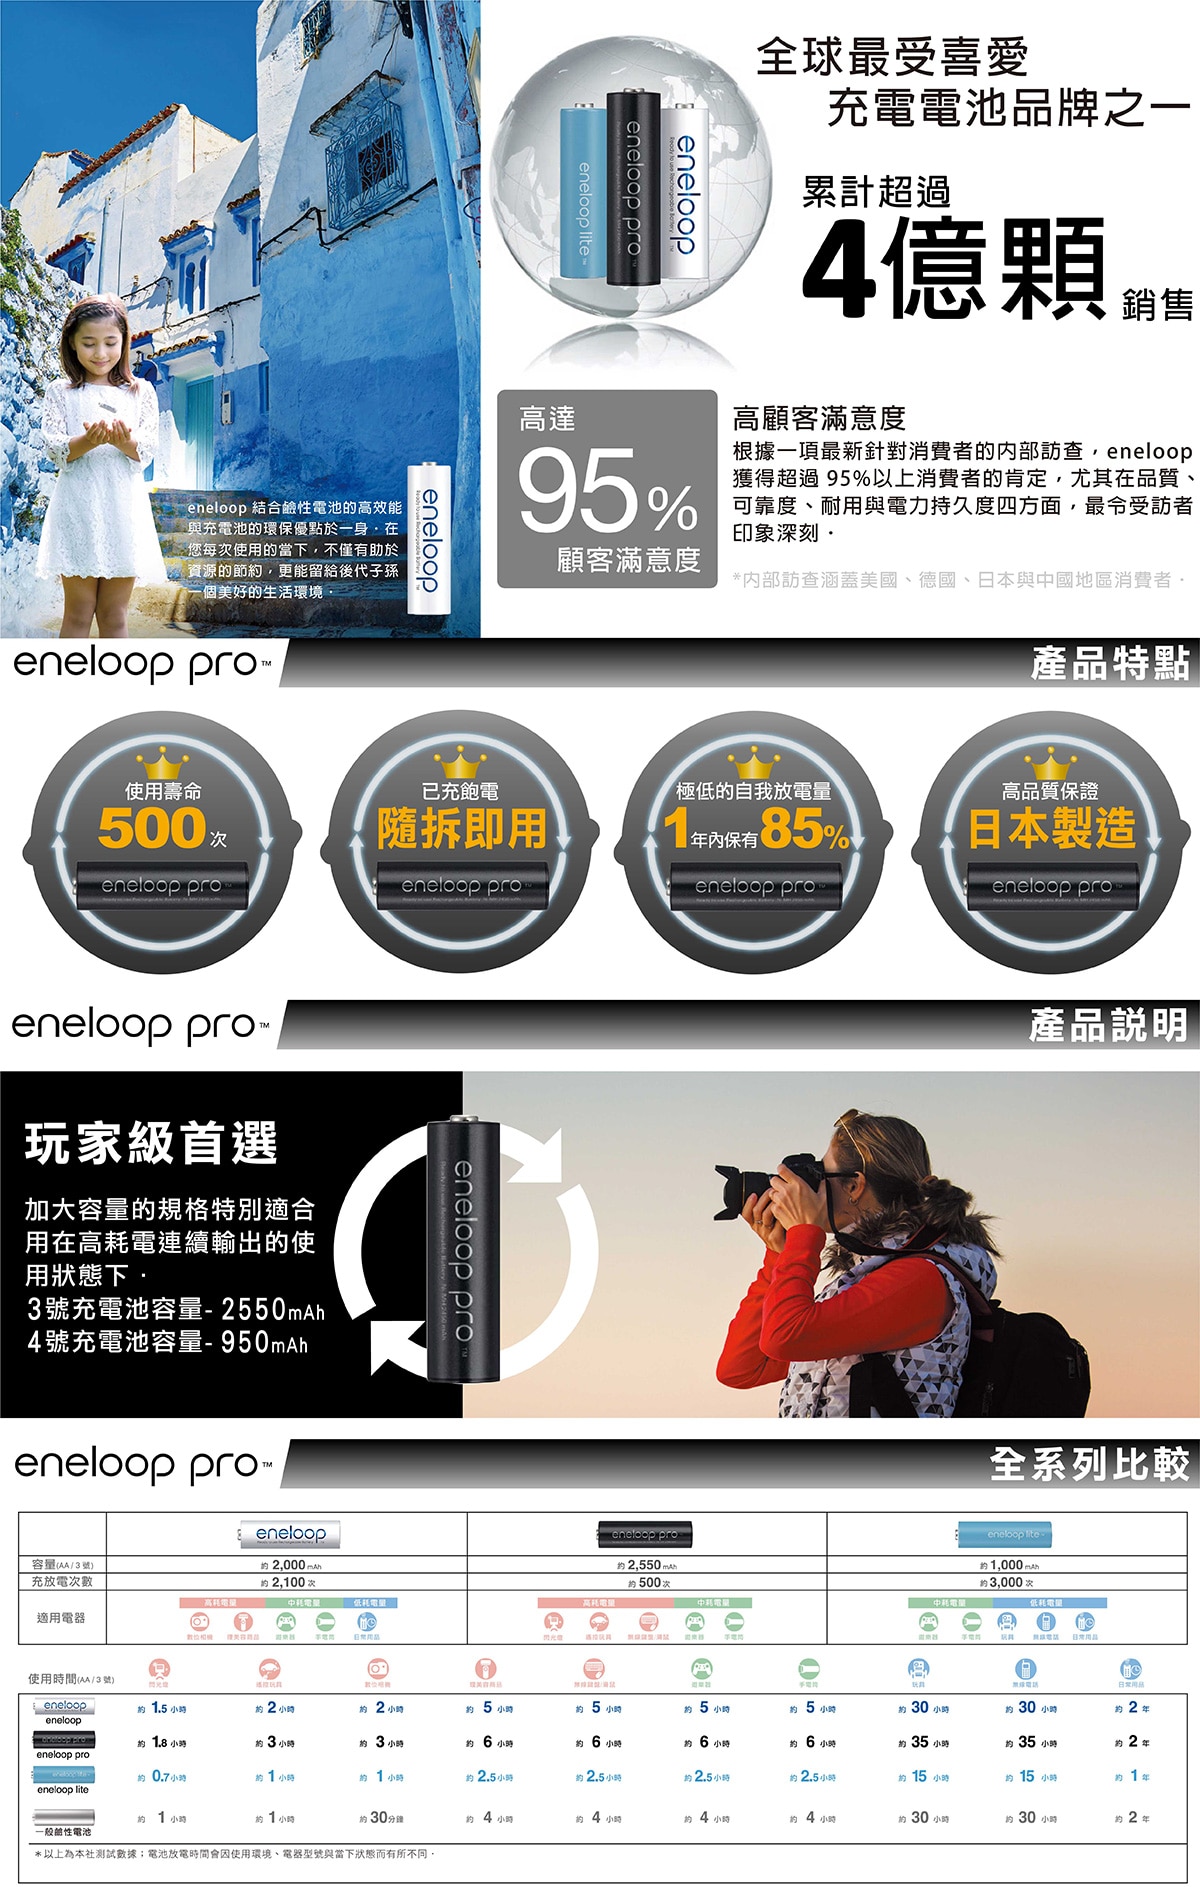 eneloop Pro 四號充電電池,使用壽命500次,已充飽電 隨拆即用,極低的自我放電量 1年內保有85%,高品質保證,日本製造。